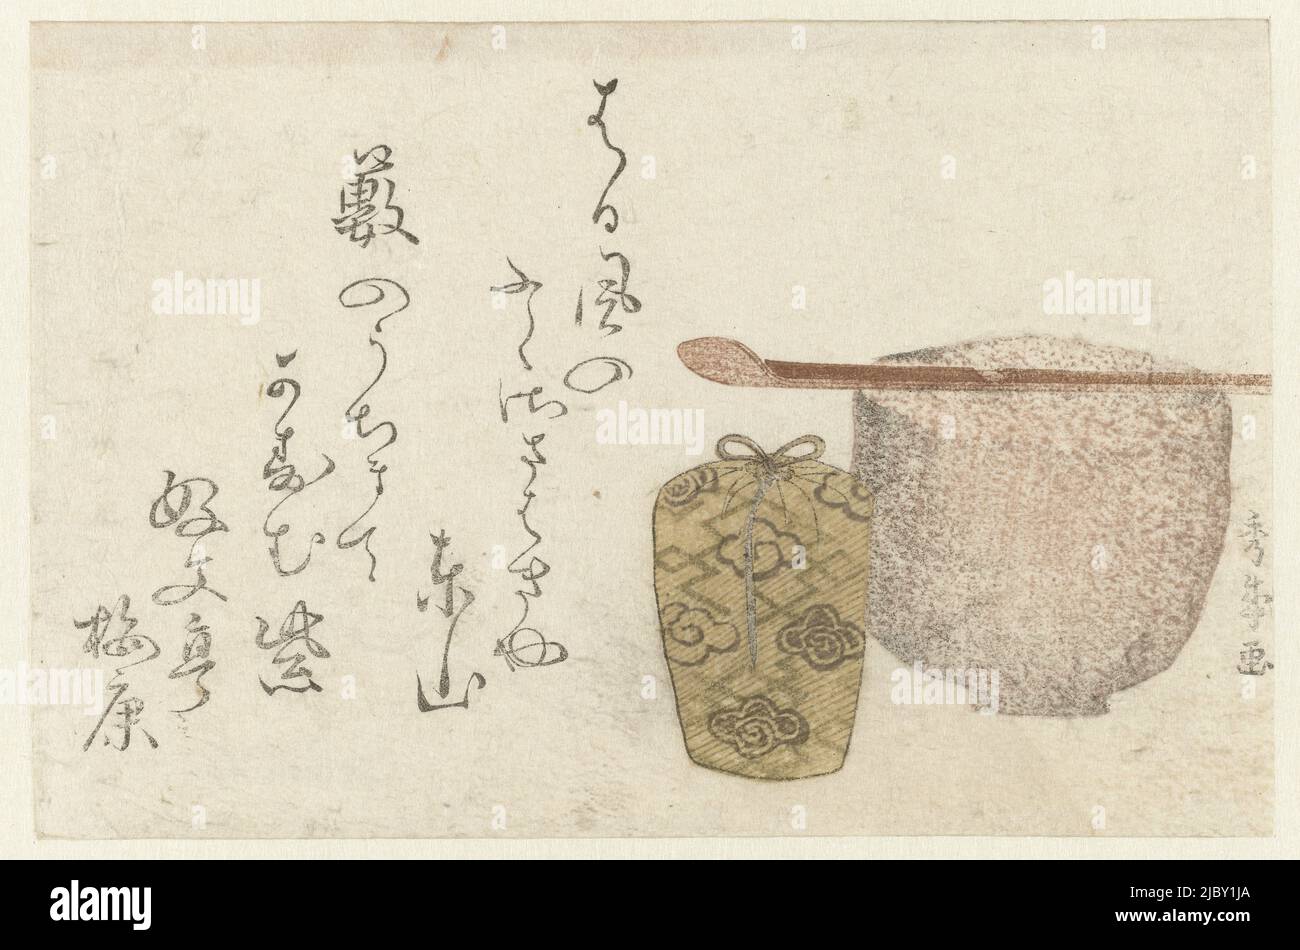 Una ciotola di tè in ceramica con cucchiaio di bambù e furgone da tè confezionato. Con poesia di Kôbuntei Umeyasu circa la casa del tè del famoso maestro Rikyu, forniture per la cerimonia del tè, stampatore: Shûraku, (menzionato sull'oggetto), Kôbuntei Umeyasu, (menzionato sull'oggetto), Giappone, c.. 1800 - c. 1805, carta, legno a colori, h 115 mm x l 175 mm Foto Stock